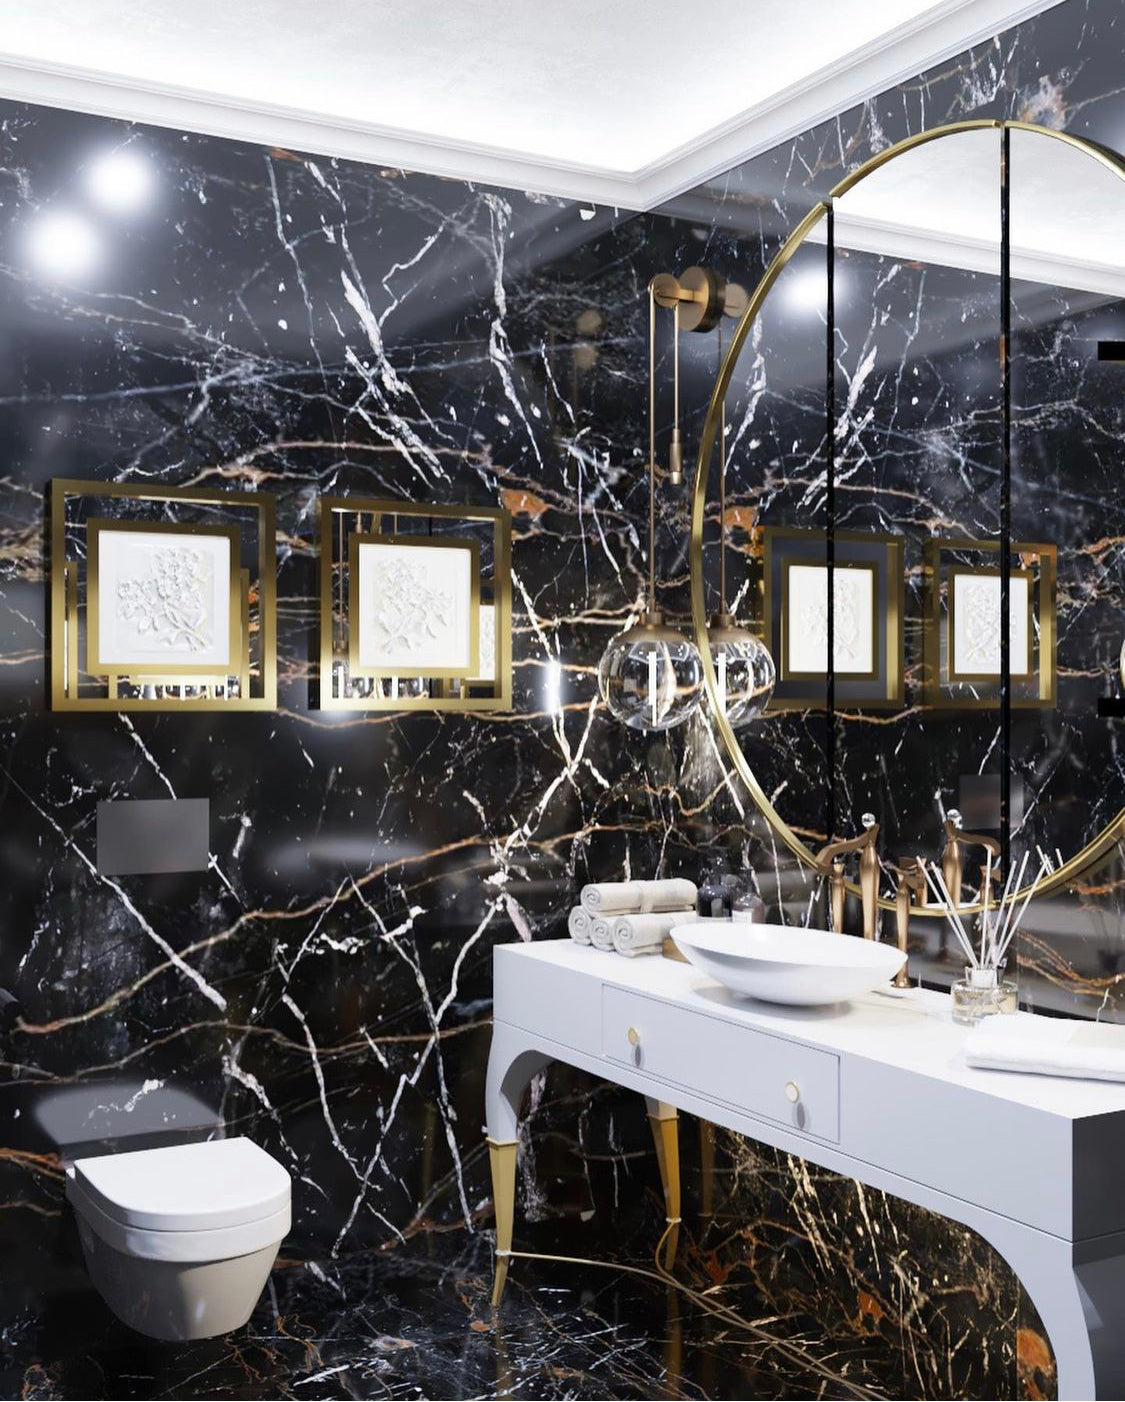 Glacier Mirror - Luxury Living Collection